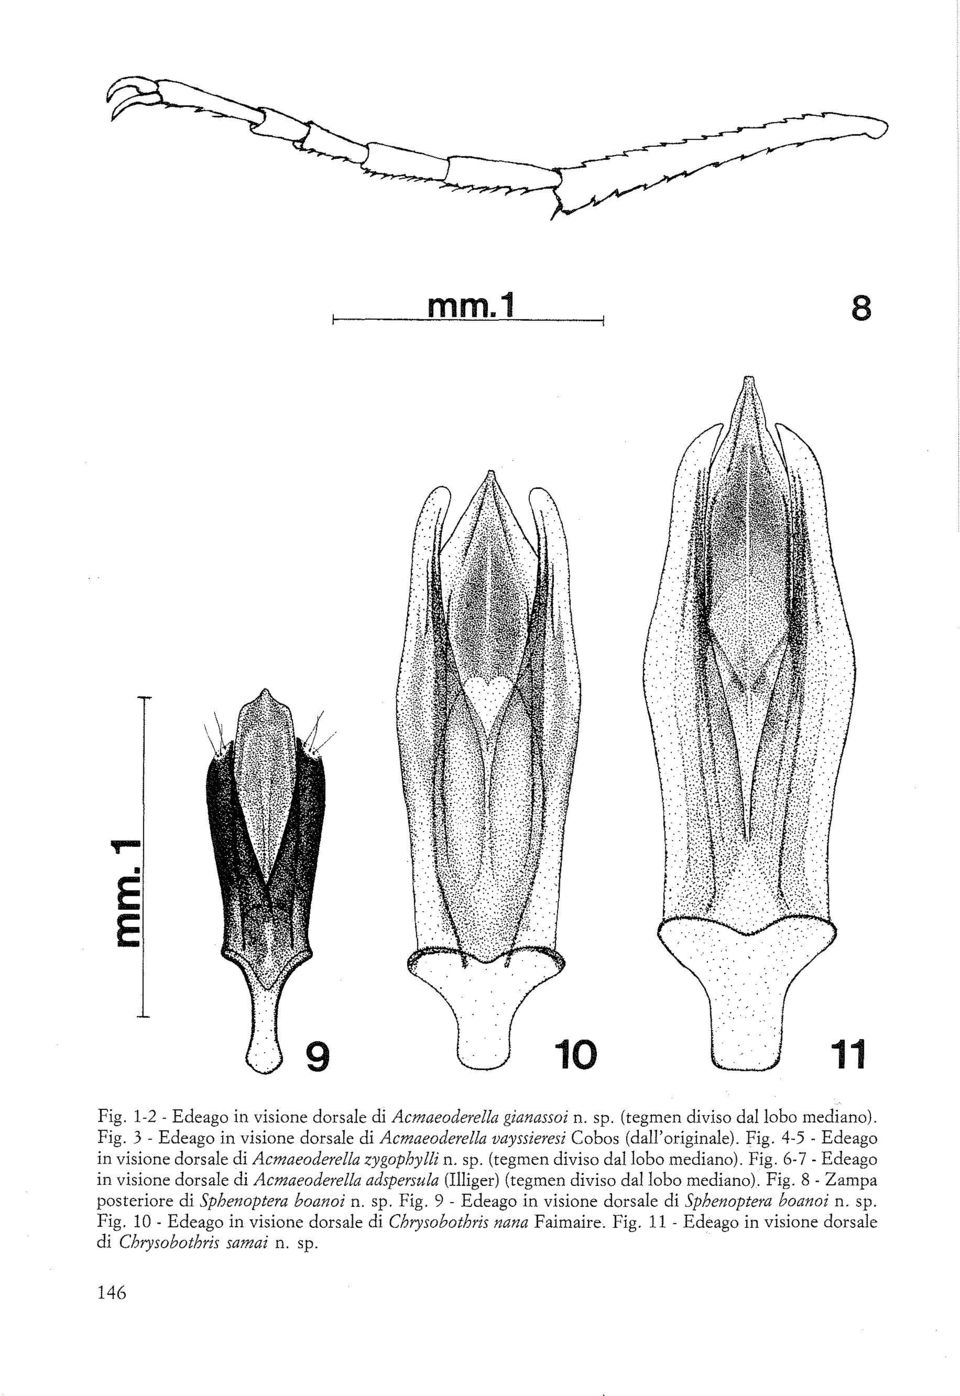 6-7 - Edeago in visione dorsale di Acmaeoderella adspersula (Illiger) (tegmen diviso dal lobo mediano). Fig. 8 - Zampa posteriore di Sphenoptera boanoi n. sp. Fig. 9 - Edeago in visione dorsale di Sphenoptera boanoi n.